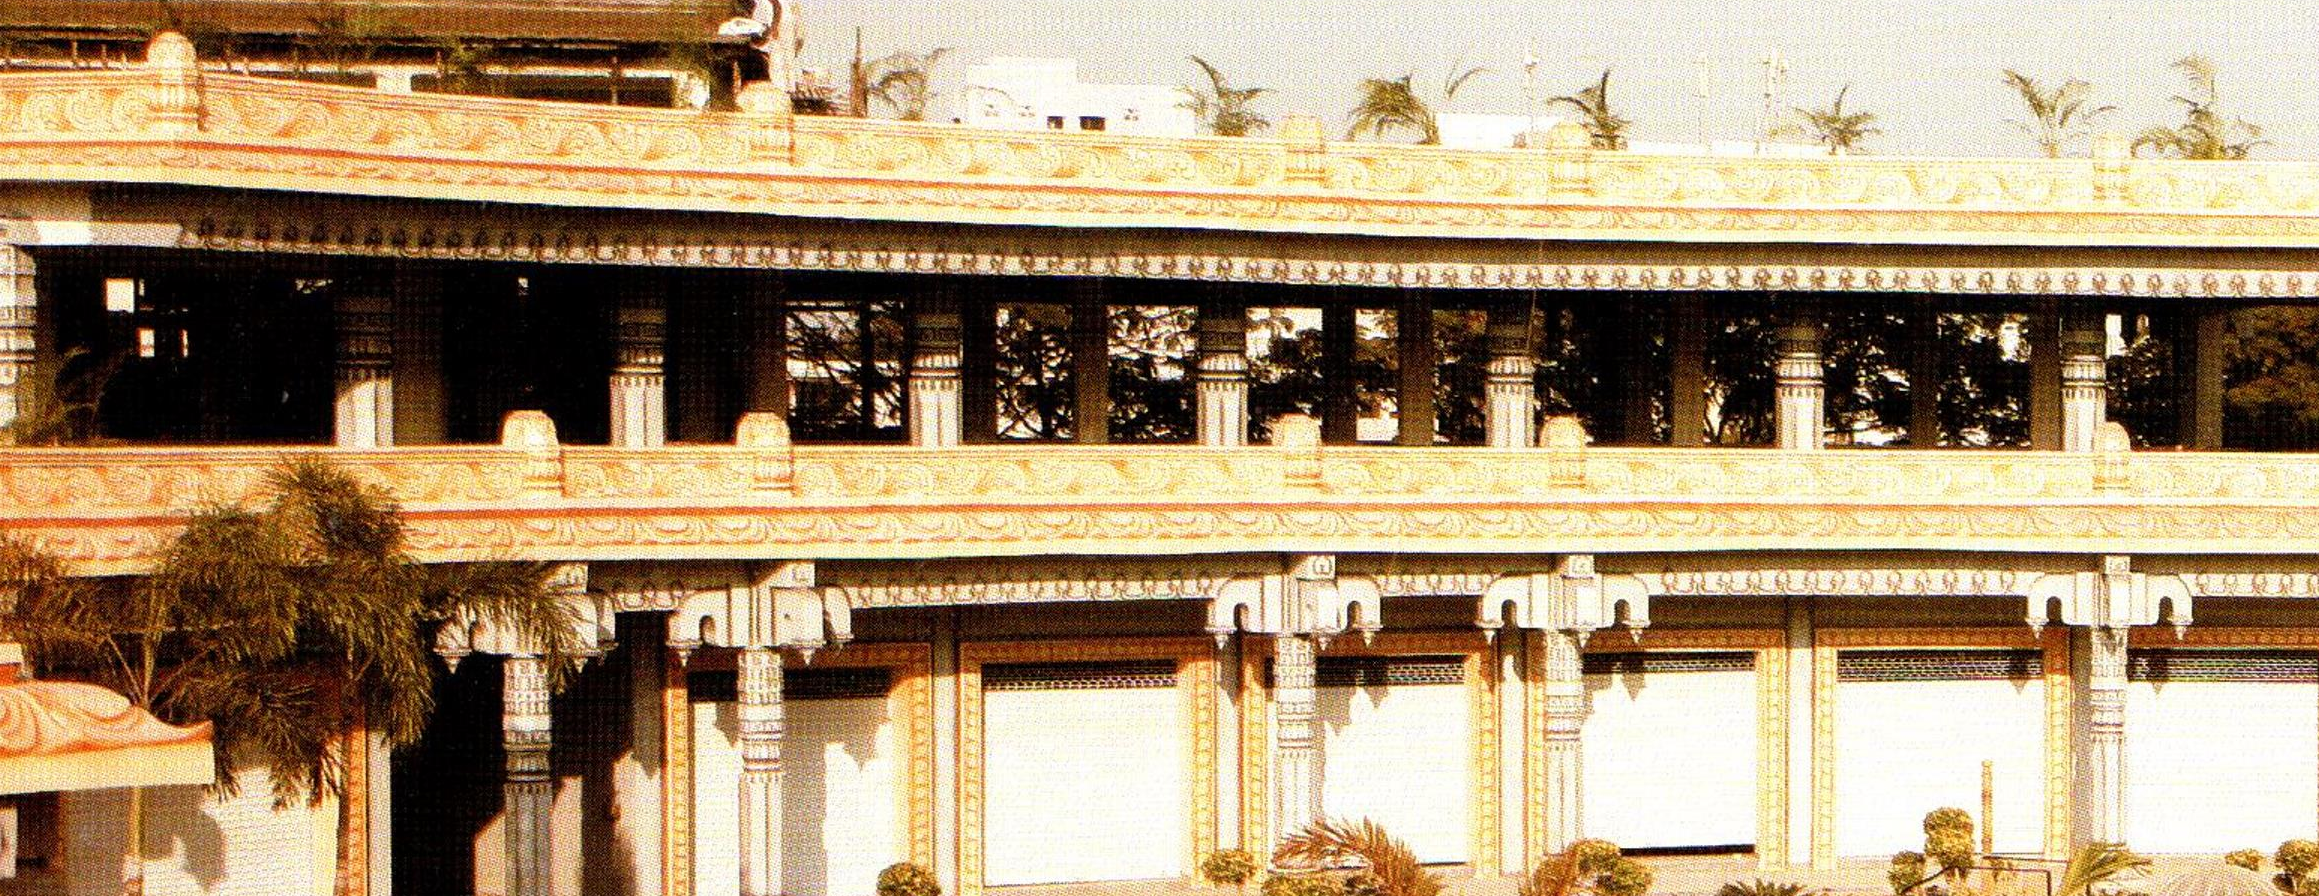 vastu vedic architecture facade example